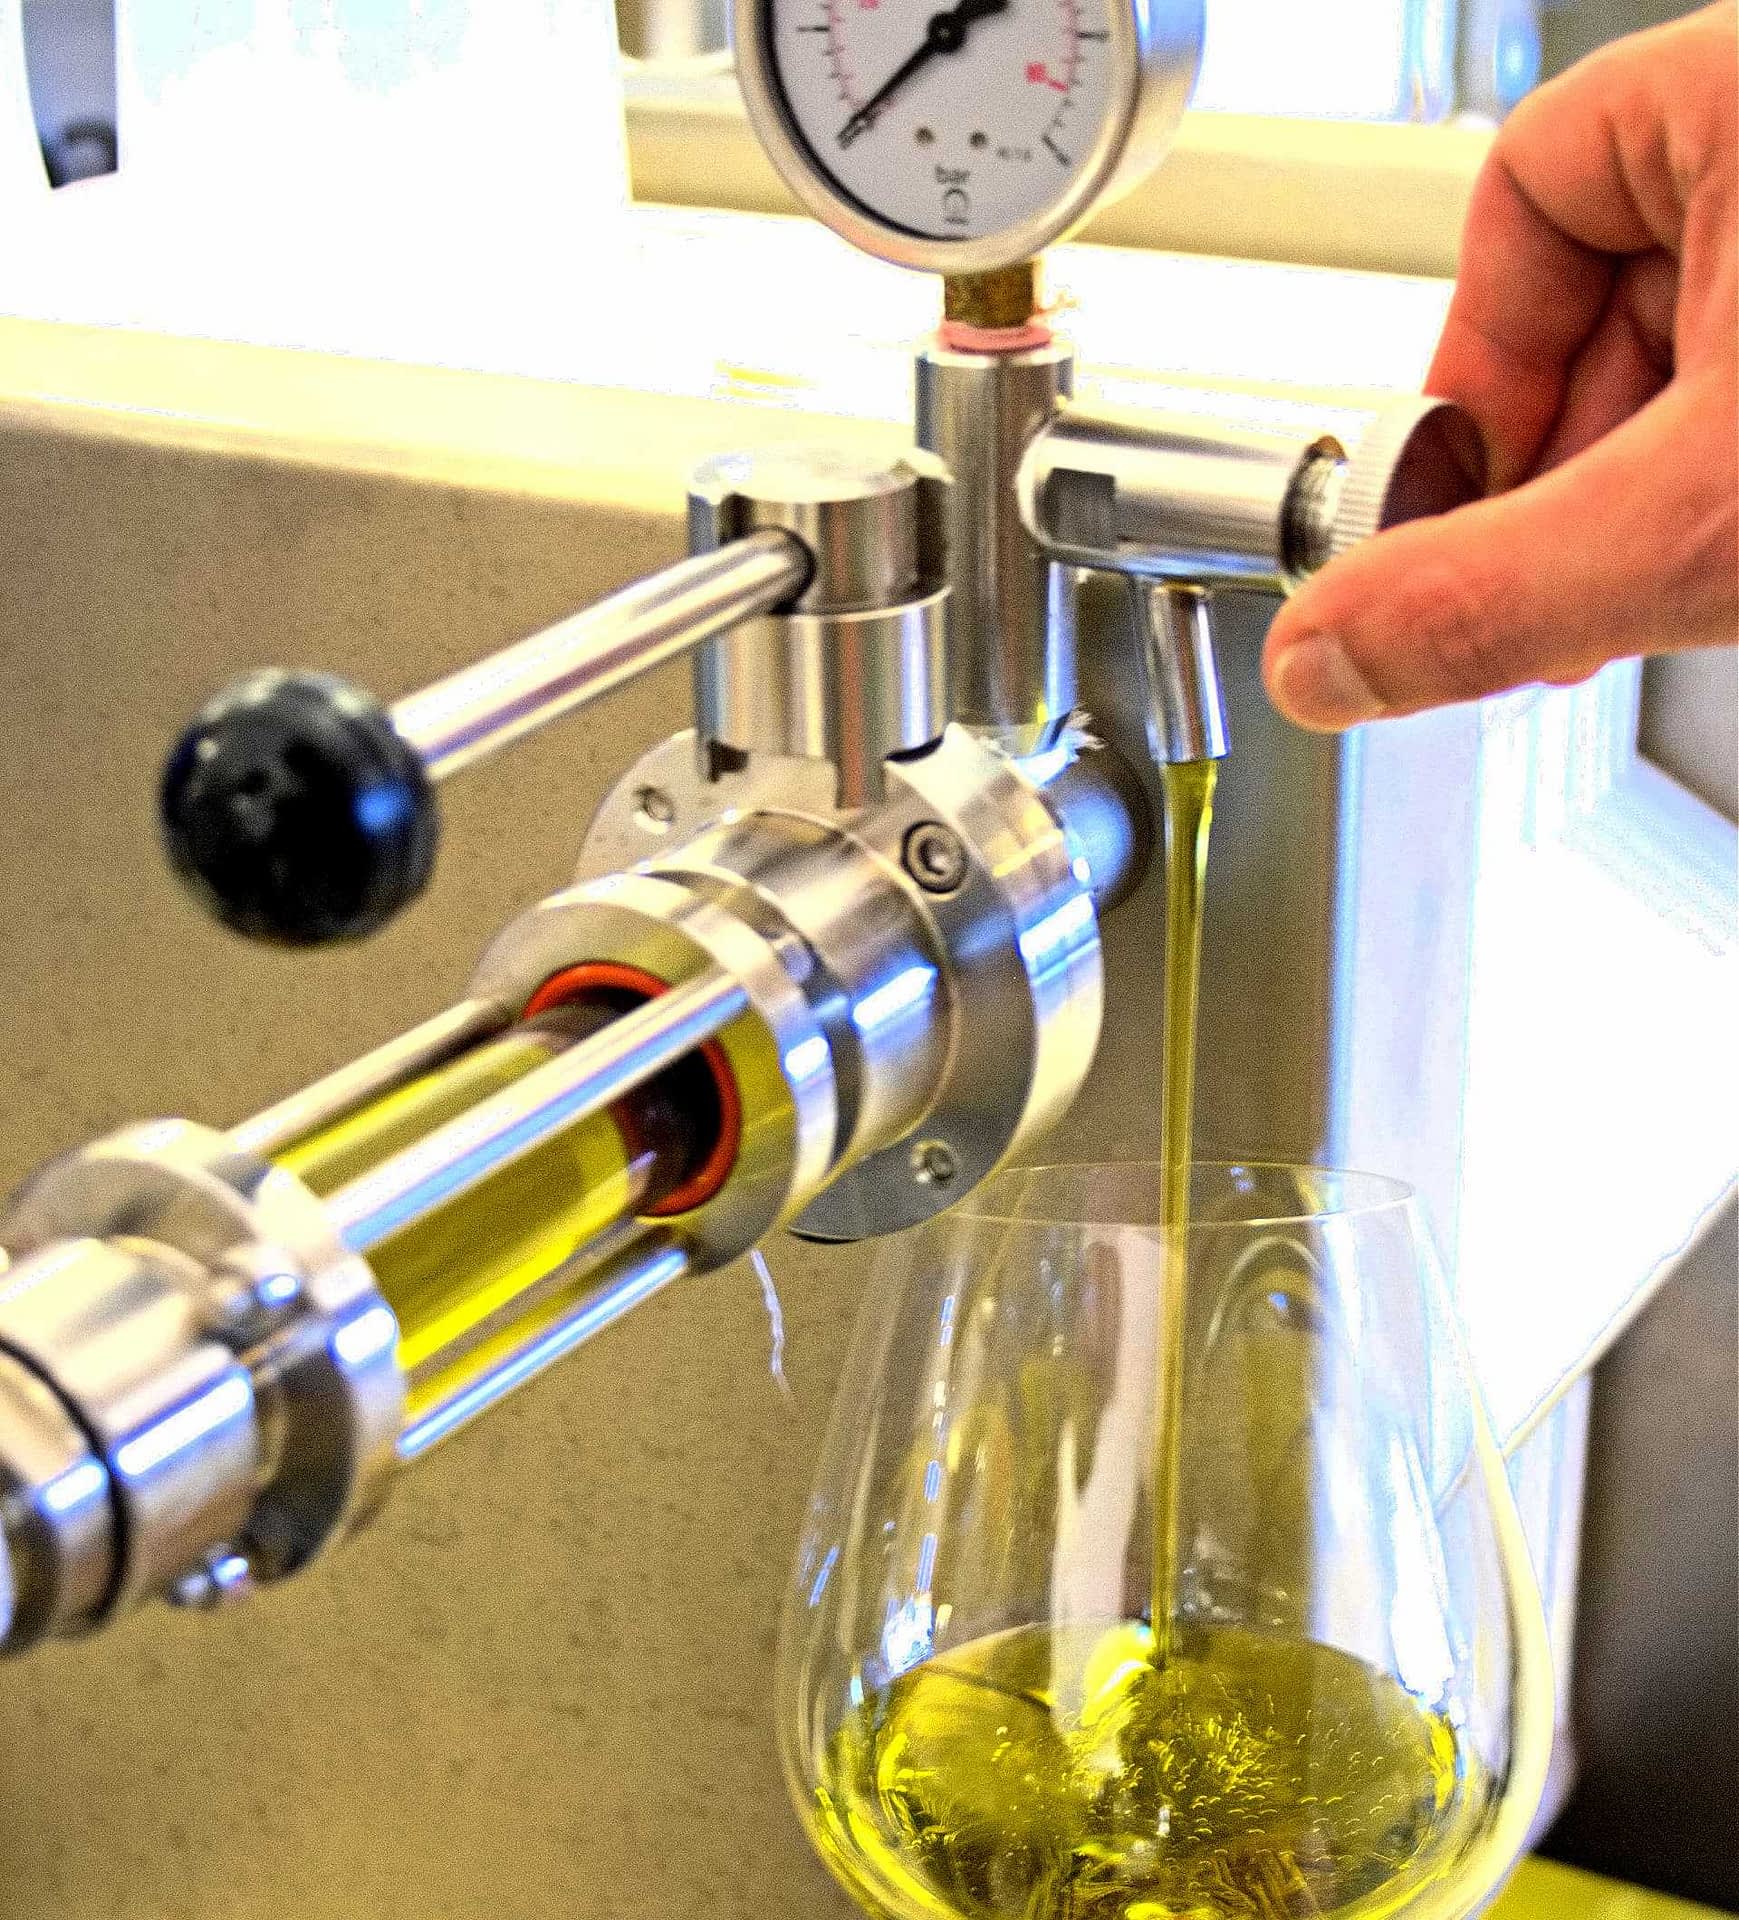 basics-aceite-de-oliva-filtrado-o-sin-filtrar-una-elección-para-los-consumidores-aceite-de-oliva-times